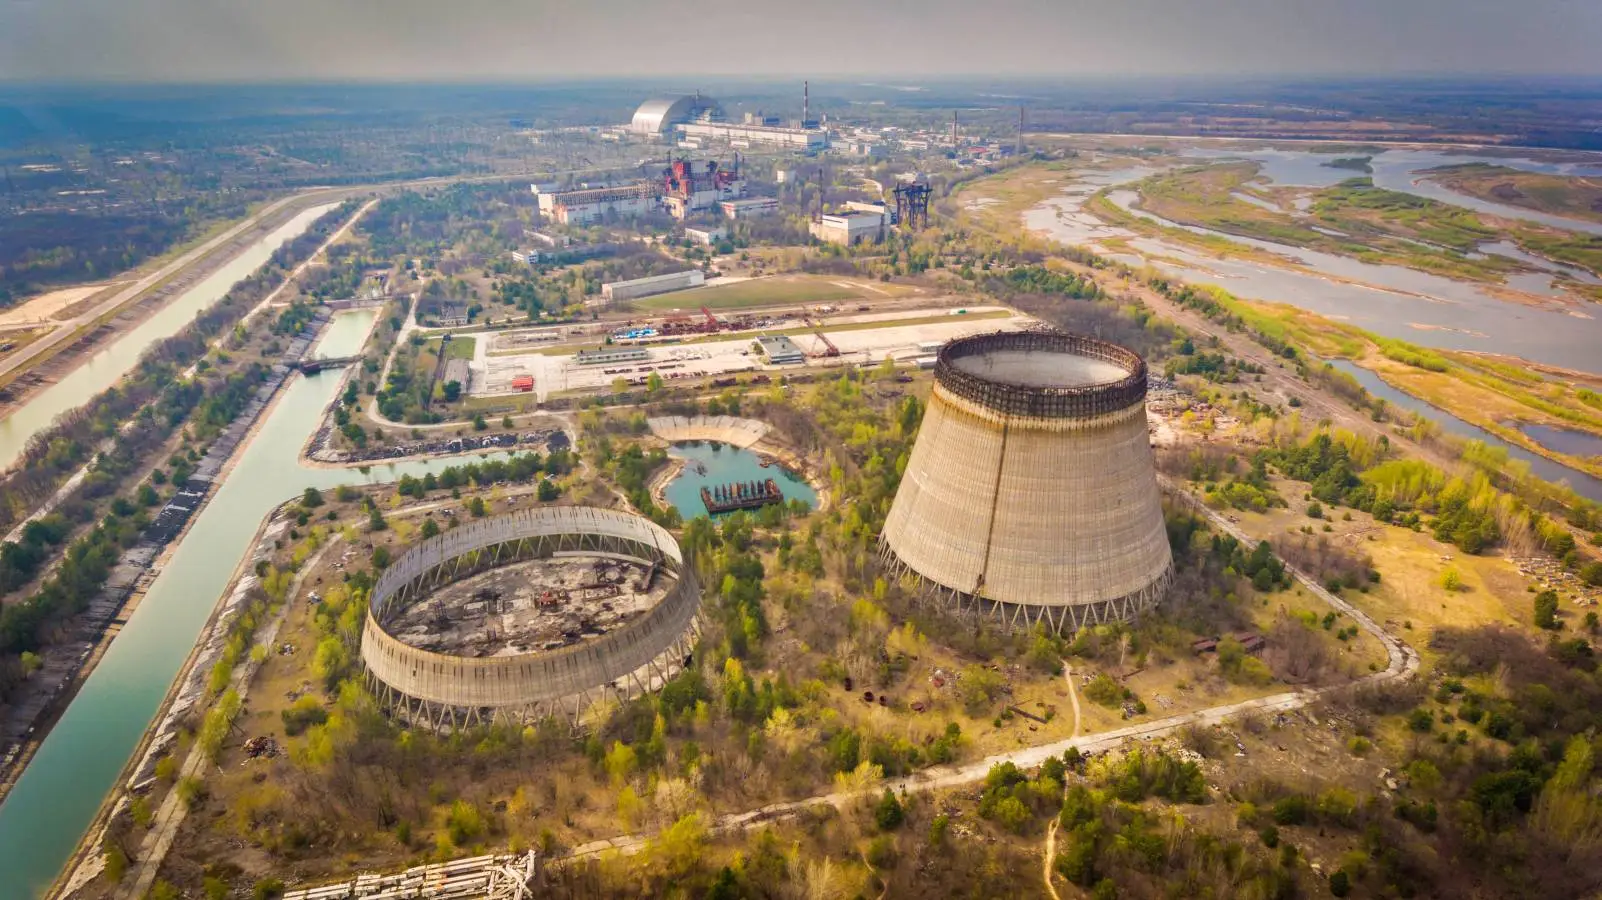 El peligro de la central nuclear de Zaporozhye, advertido oficialmente a los residentes de la zona